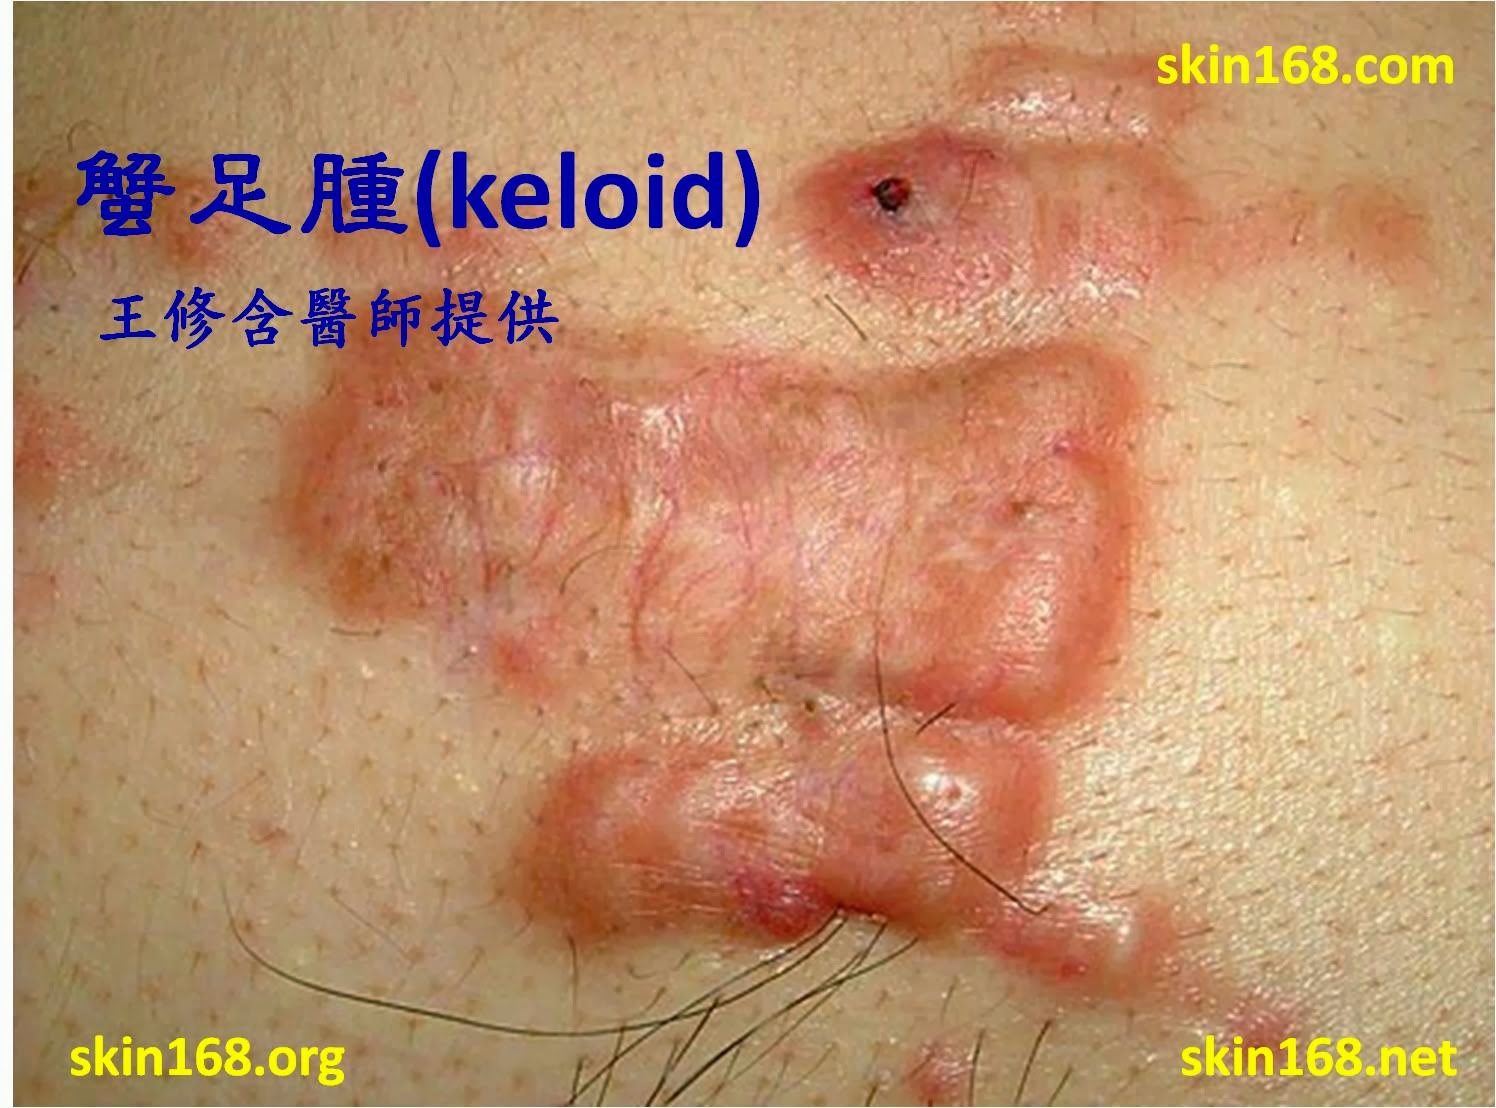 皮膚科王修含醫師 類固醇注射蟹足腫 肥厚性疤痕的副作用